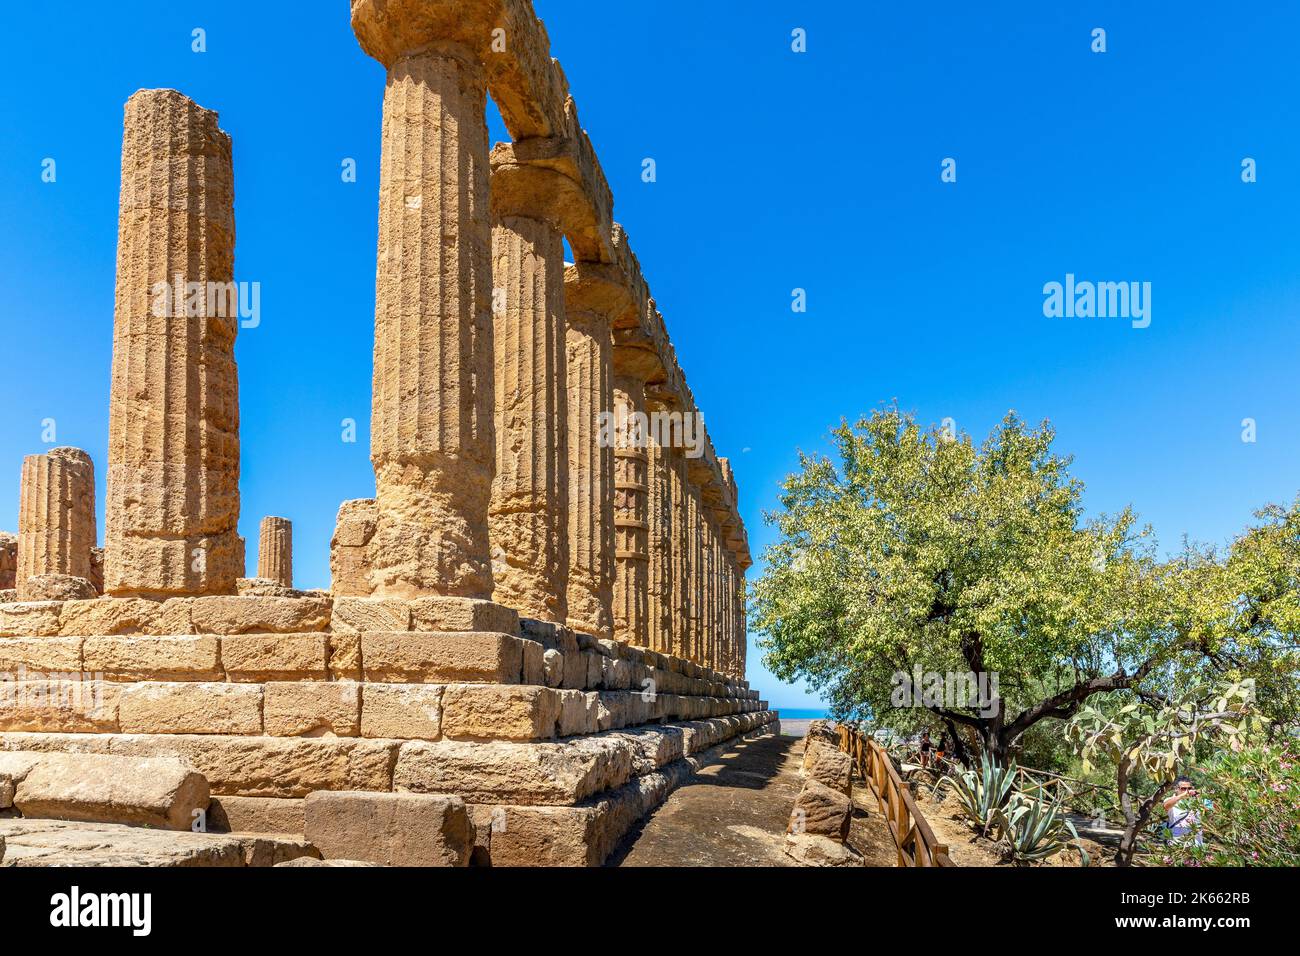 Agrigento, Sicile, Italie - 12 juillet 2020 : le temple de Juno, dans la vallée des temples d'Agrigento en Sicile Banque D'Images